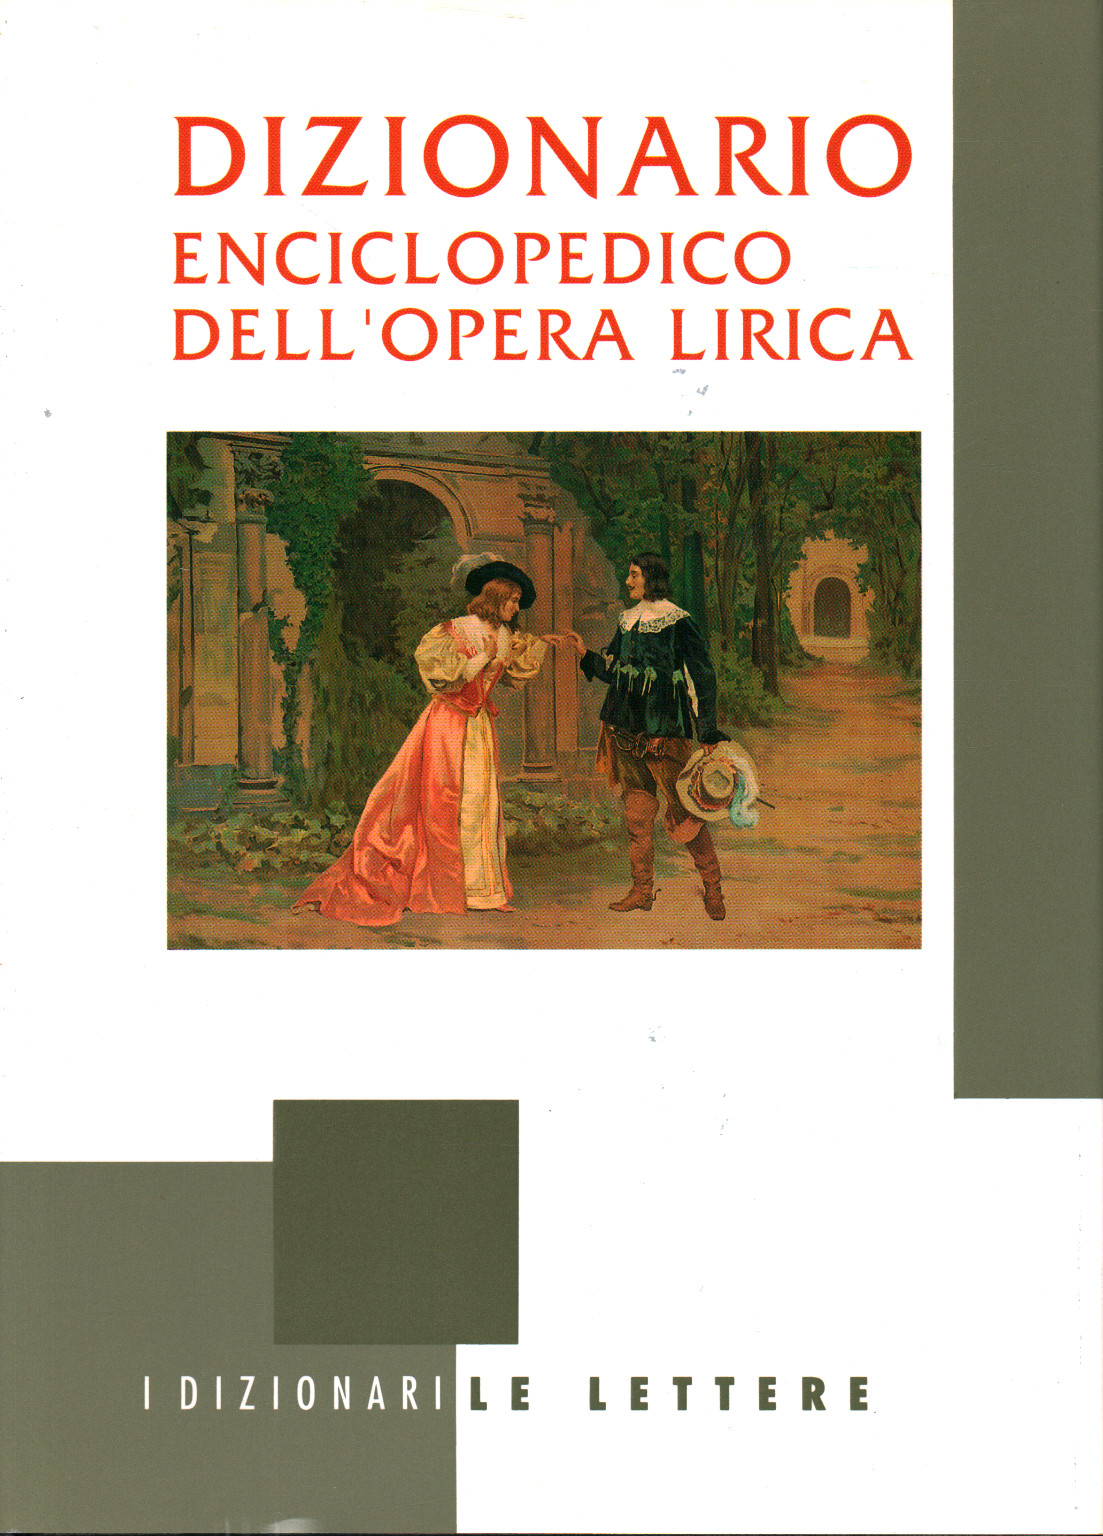 Dizionario enciclopedico dell opera lirica, s.a.